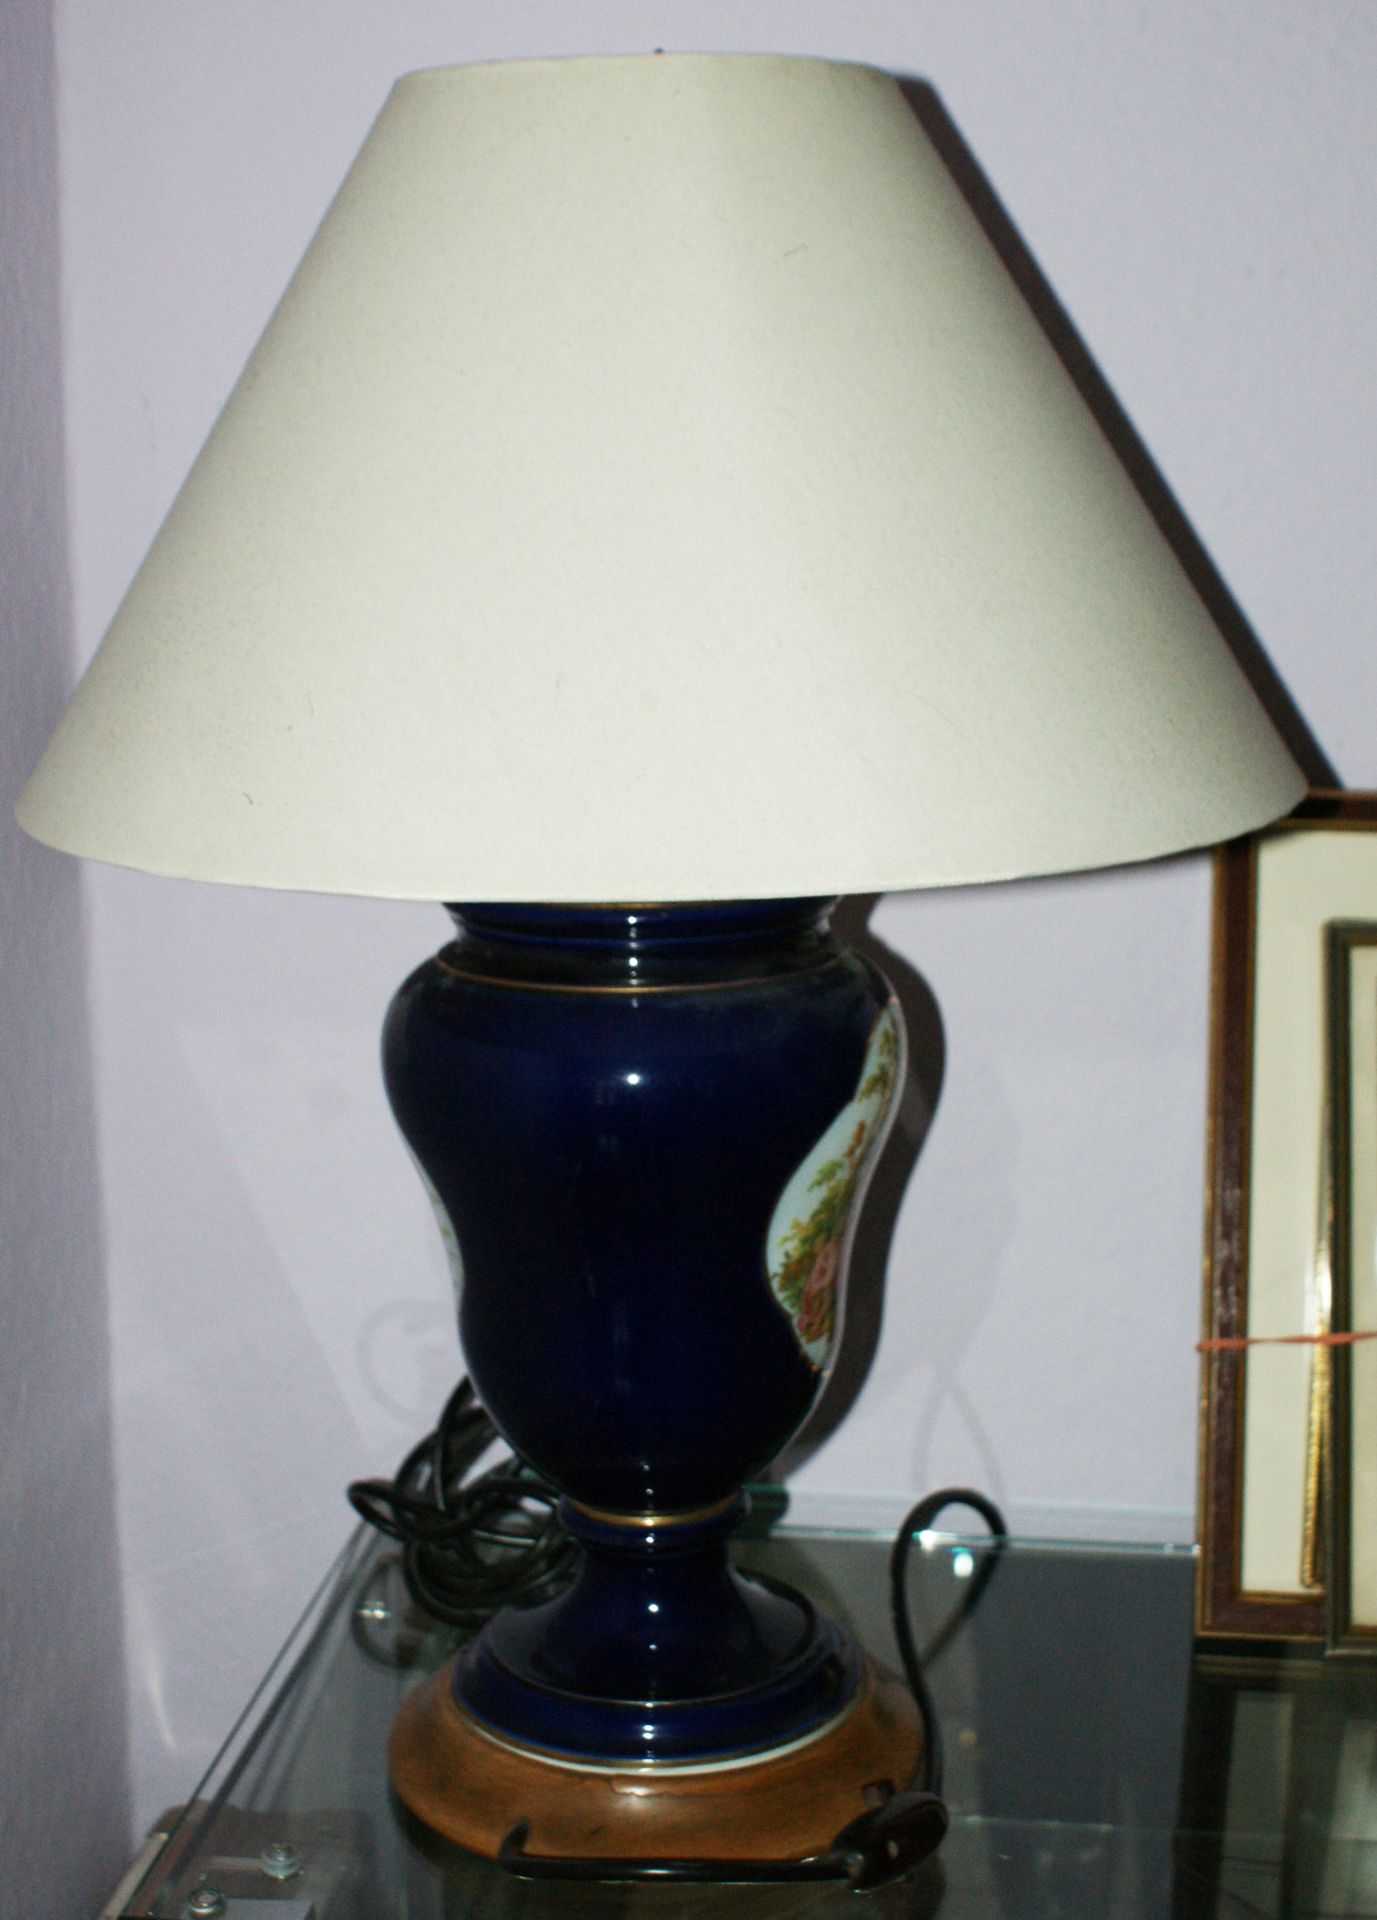 1 Porzellan-Lampe, kobaltblau, mit feiner Malerei. 1x Blumenbouquet, sowie 1 romantische Szene. - Bild 4 aus 4